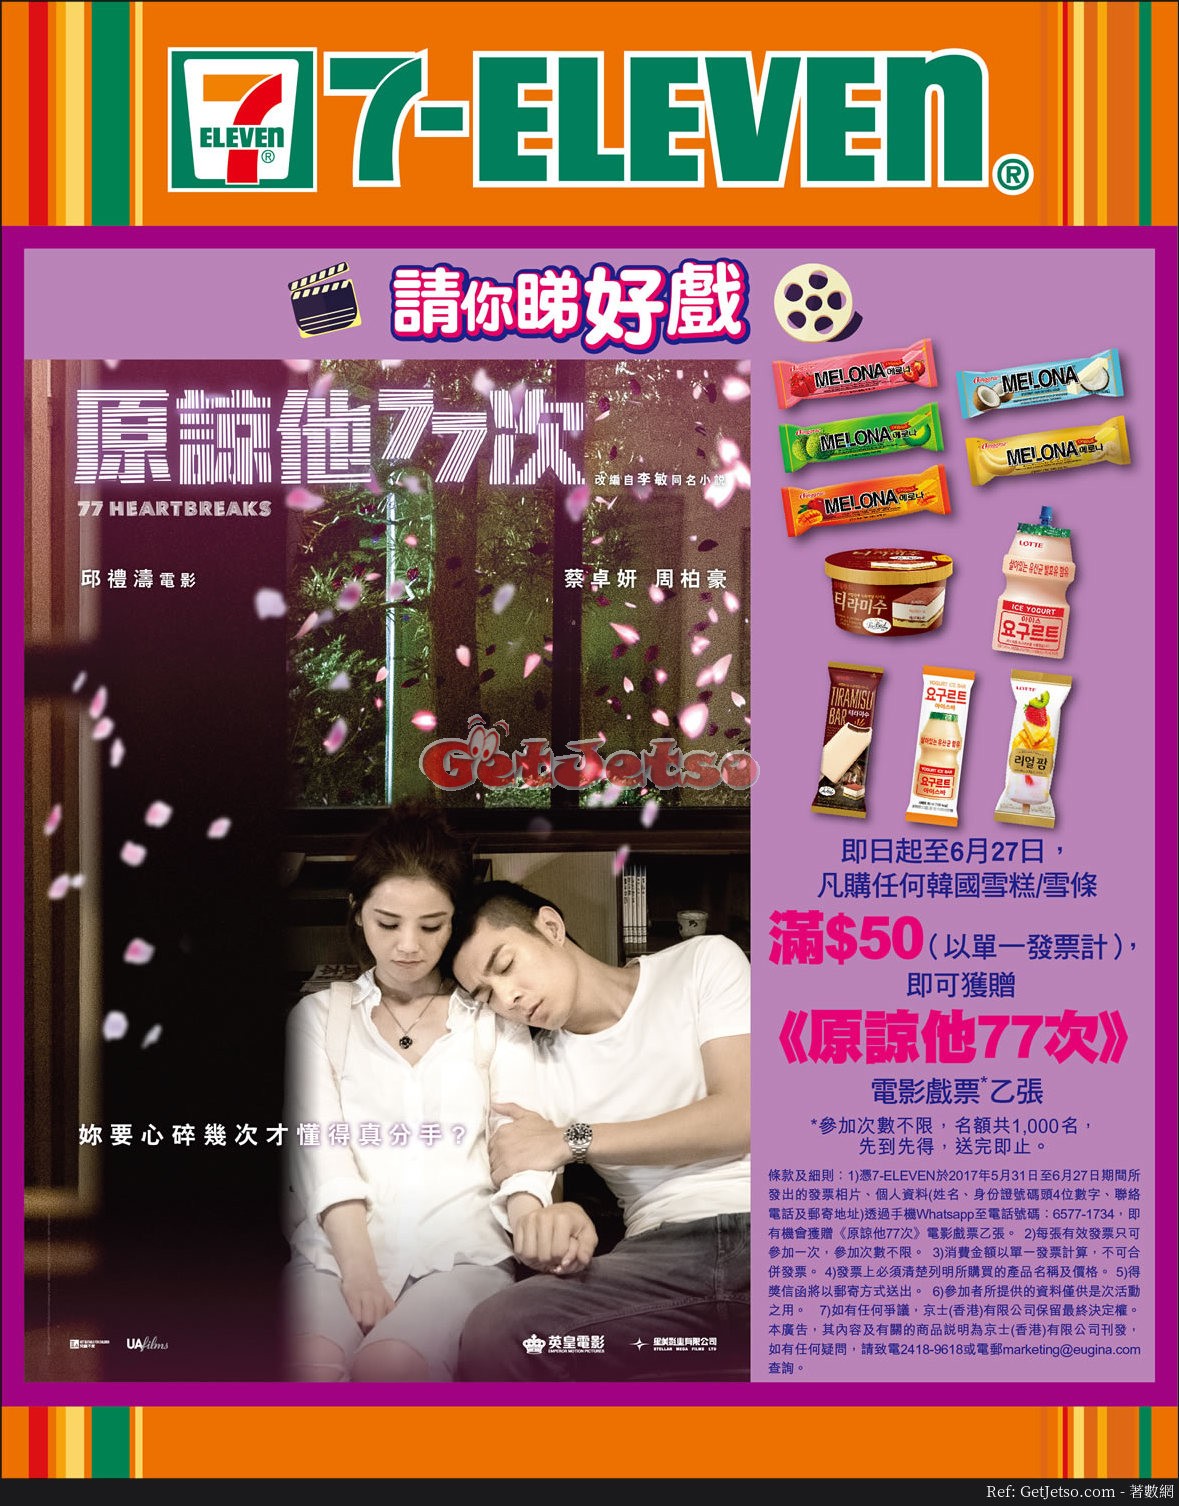 購買韓國雪糕雪條滿免費換戲飛@7-Eleven(至17年6月27日)圖片1